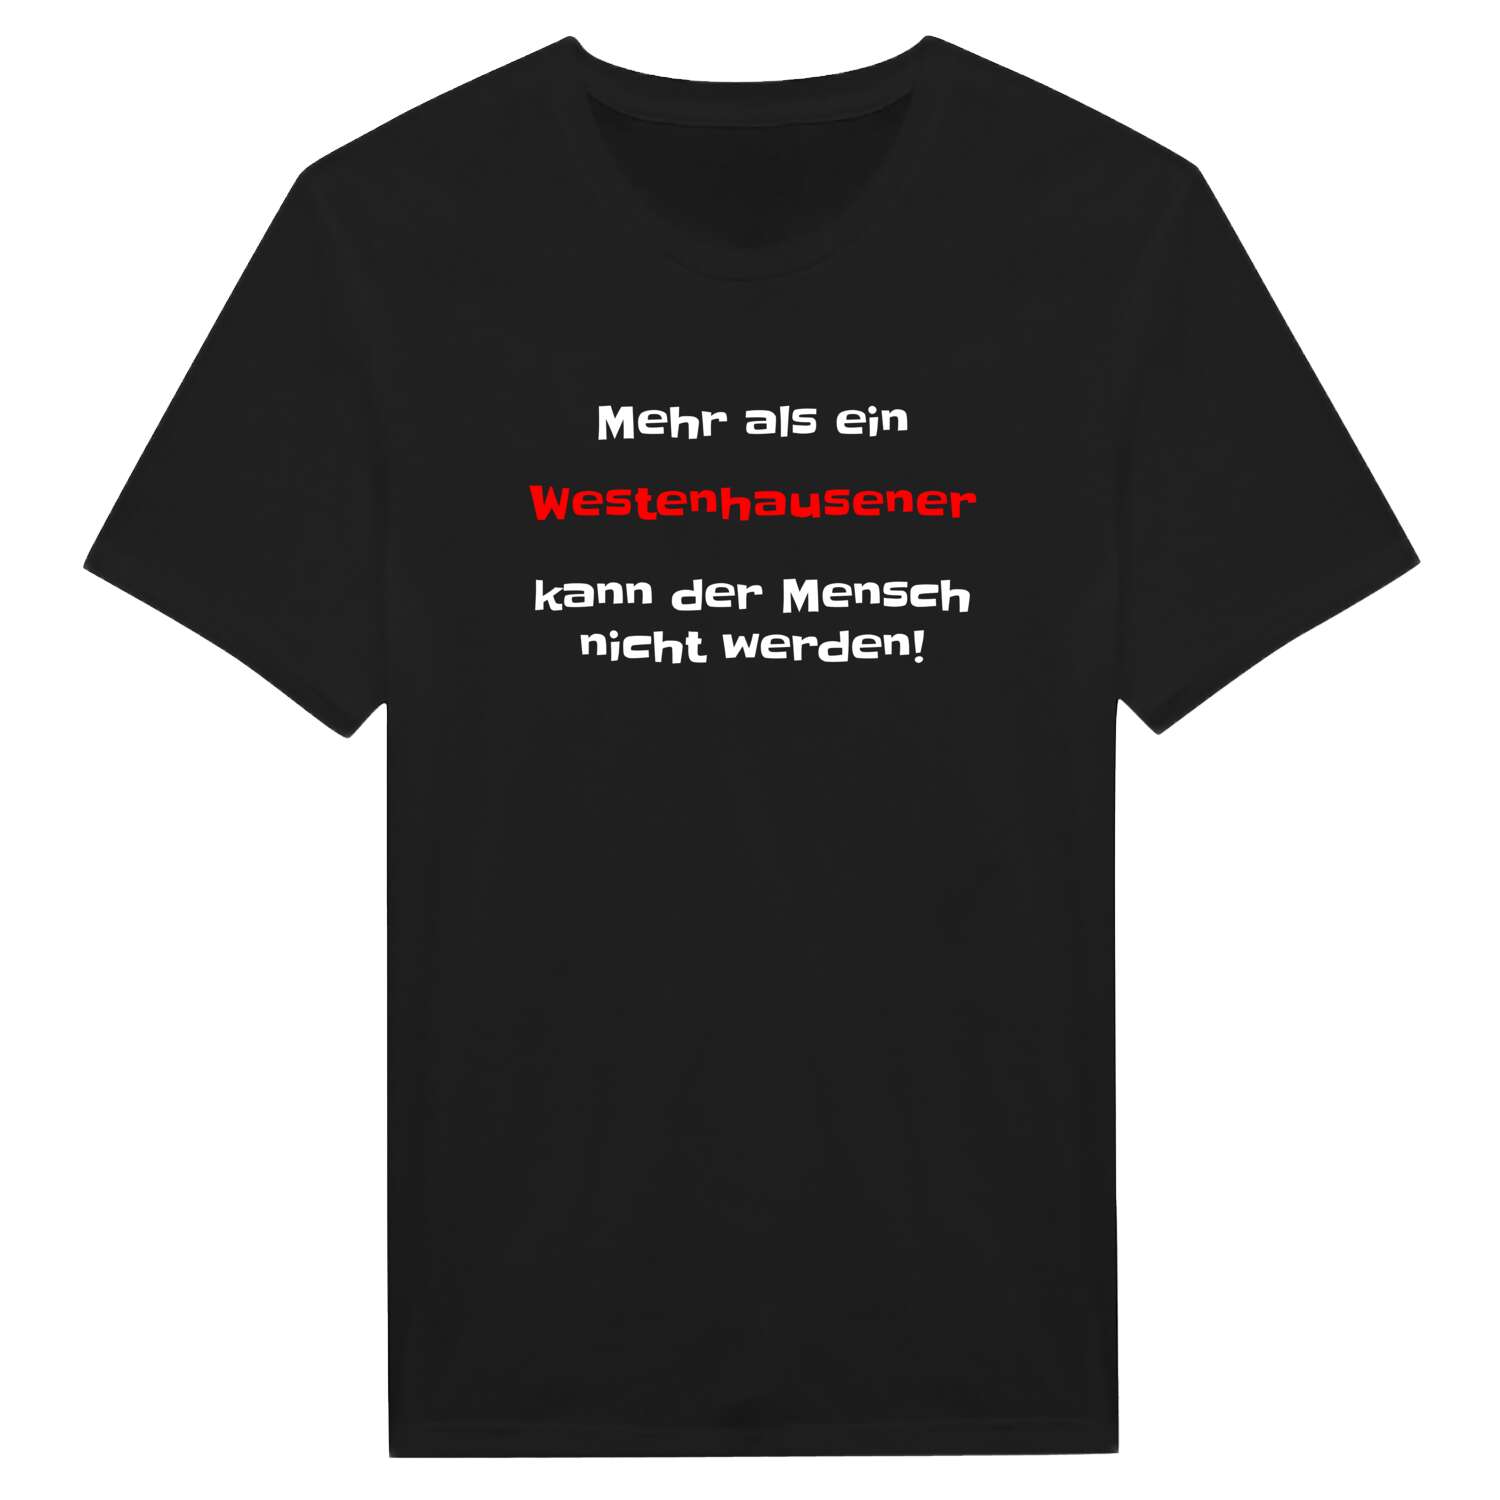 Westenhausen T-Shirt »Mehr als ein«